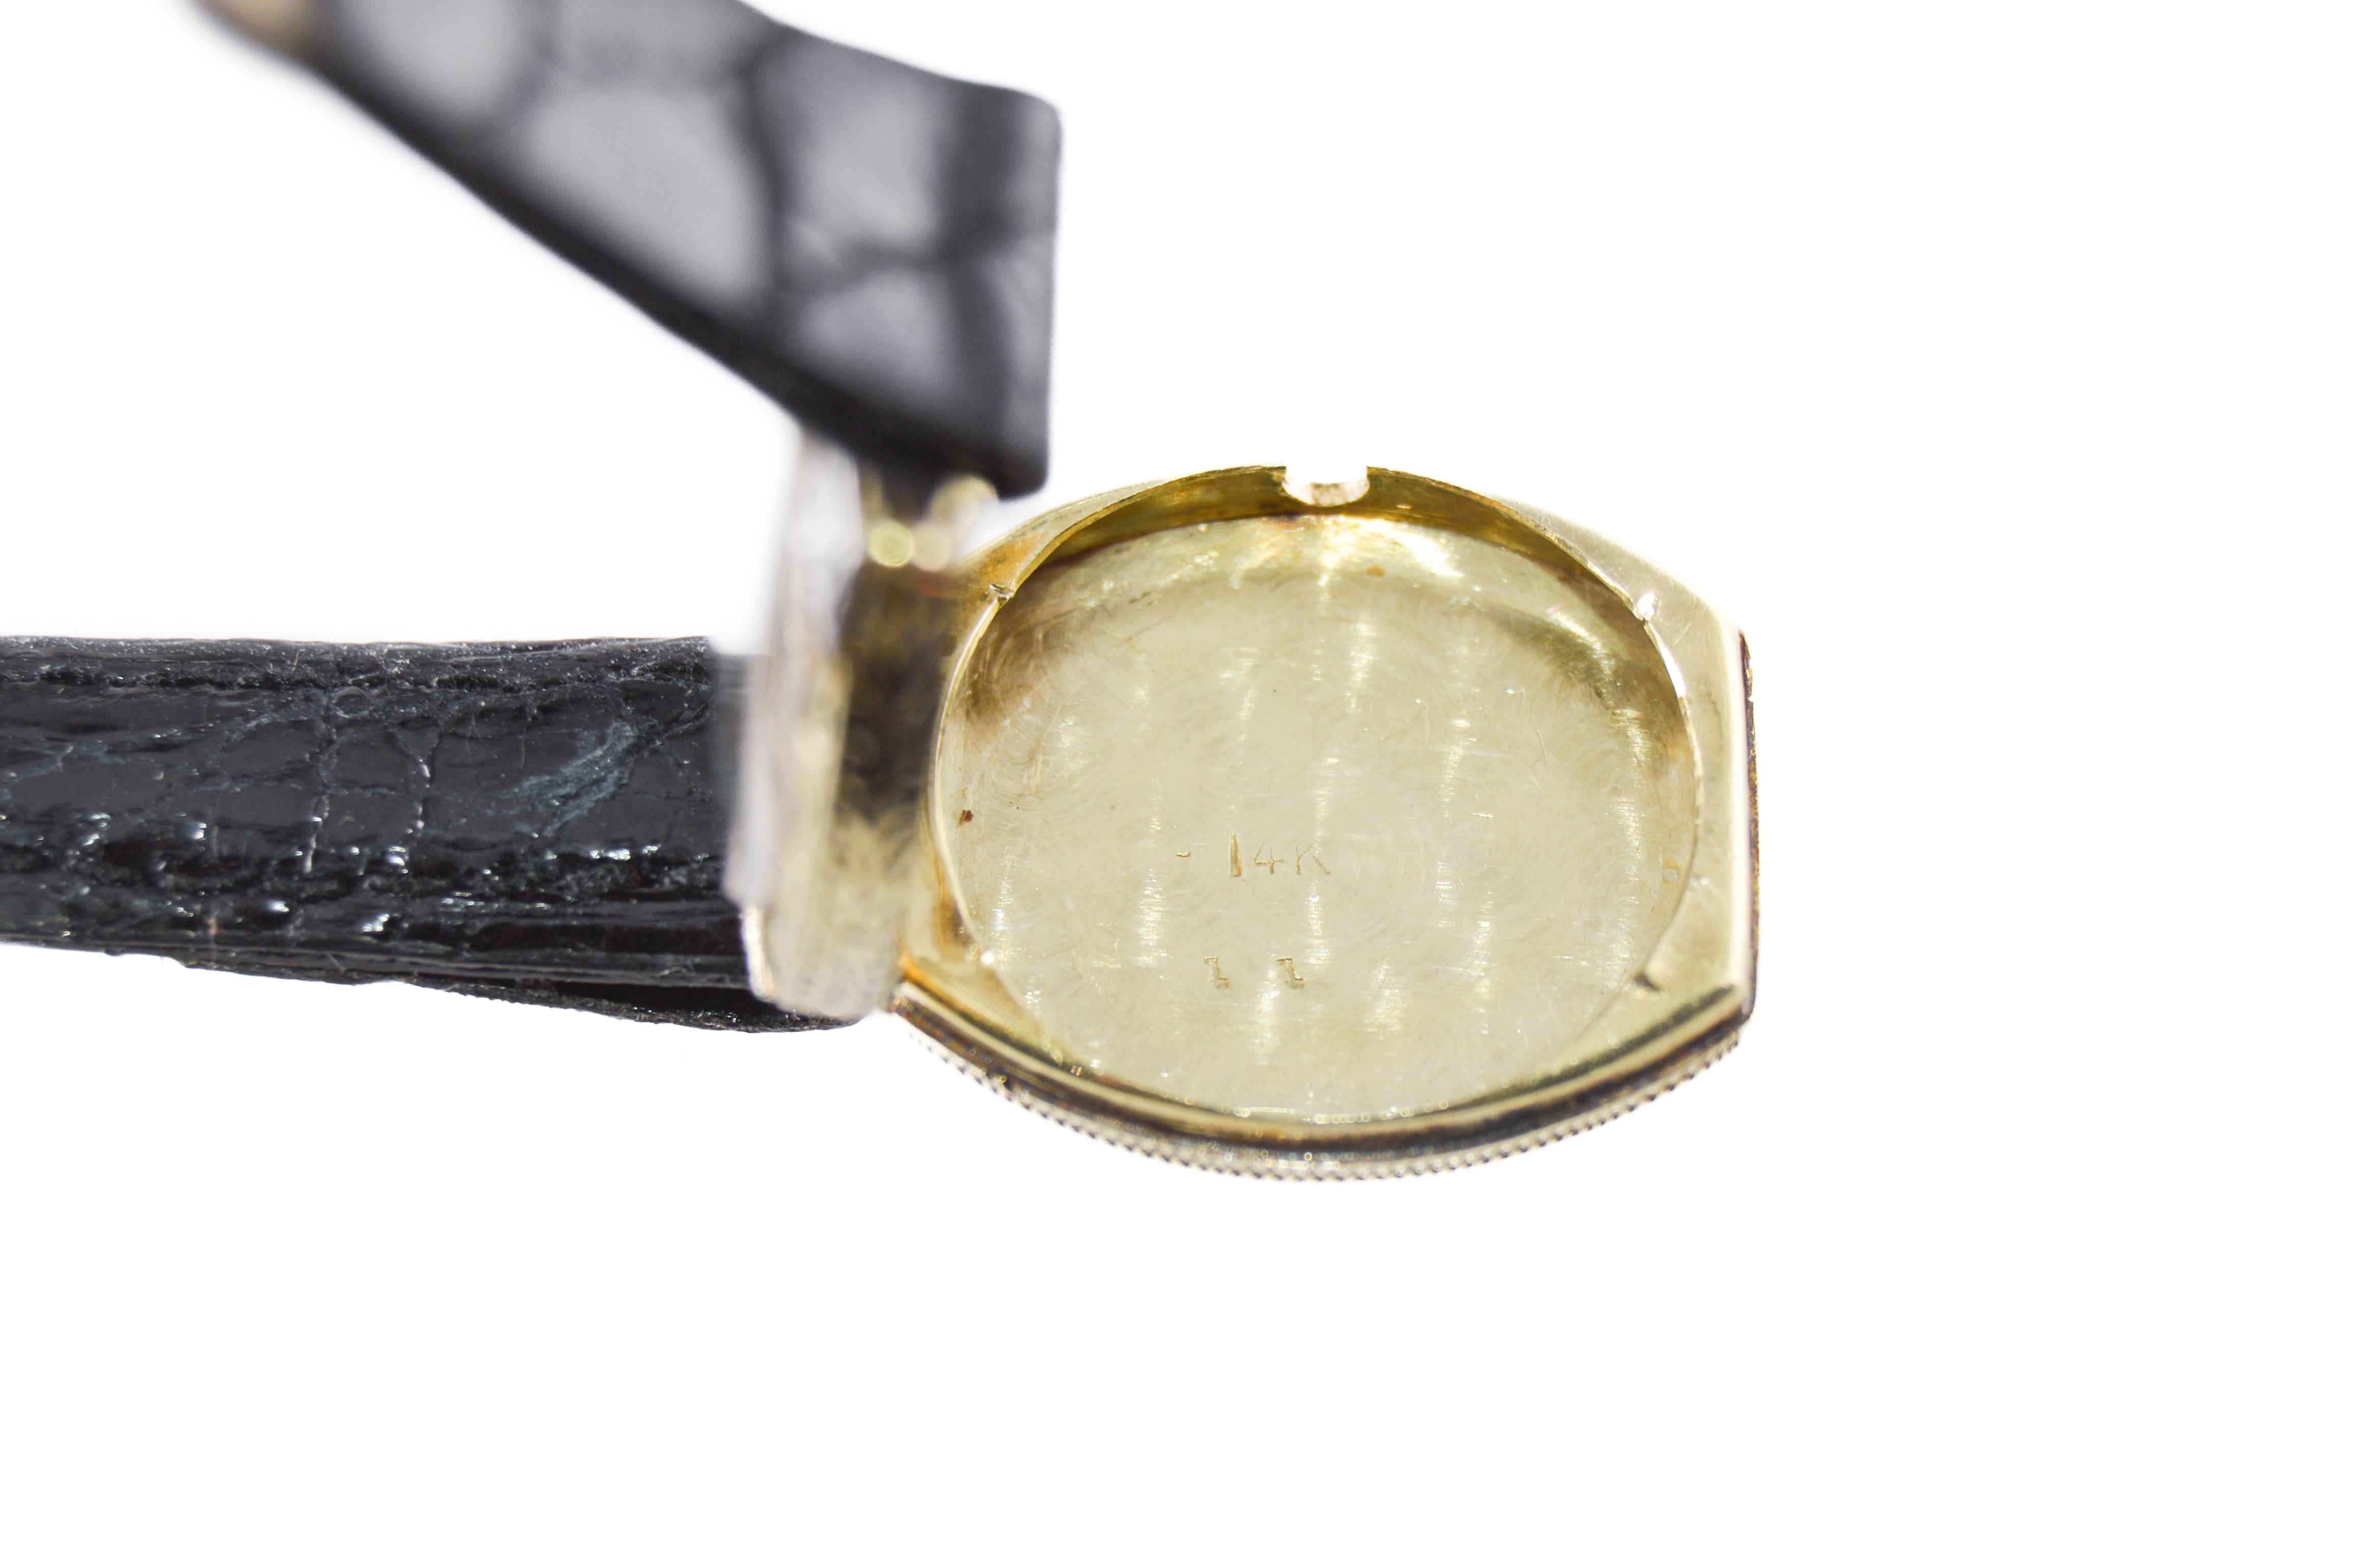 Gruen 14kt Solid Gold Art Deco Ladies Watch handmade 1920s with Diamond Bezel 8